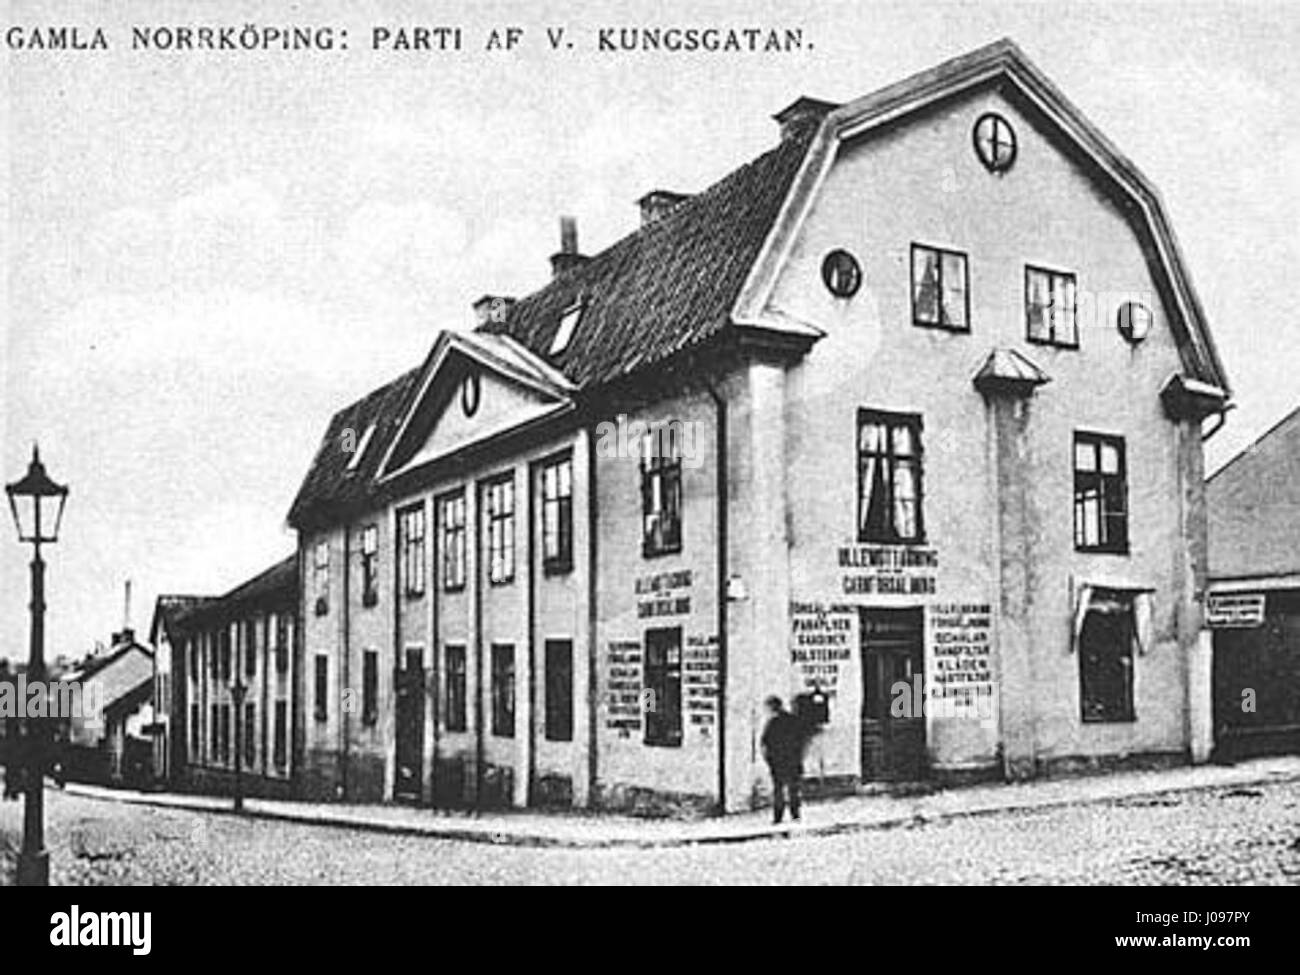 Norrköping, Västra Kungsgatan i början av 1900-talet Stock Photo